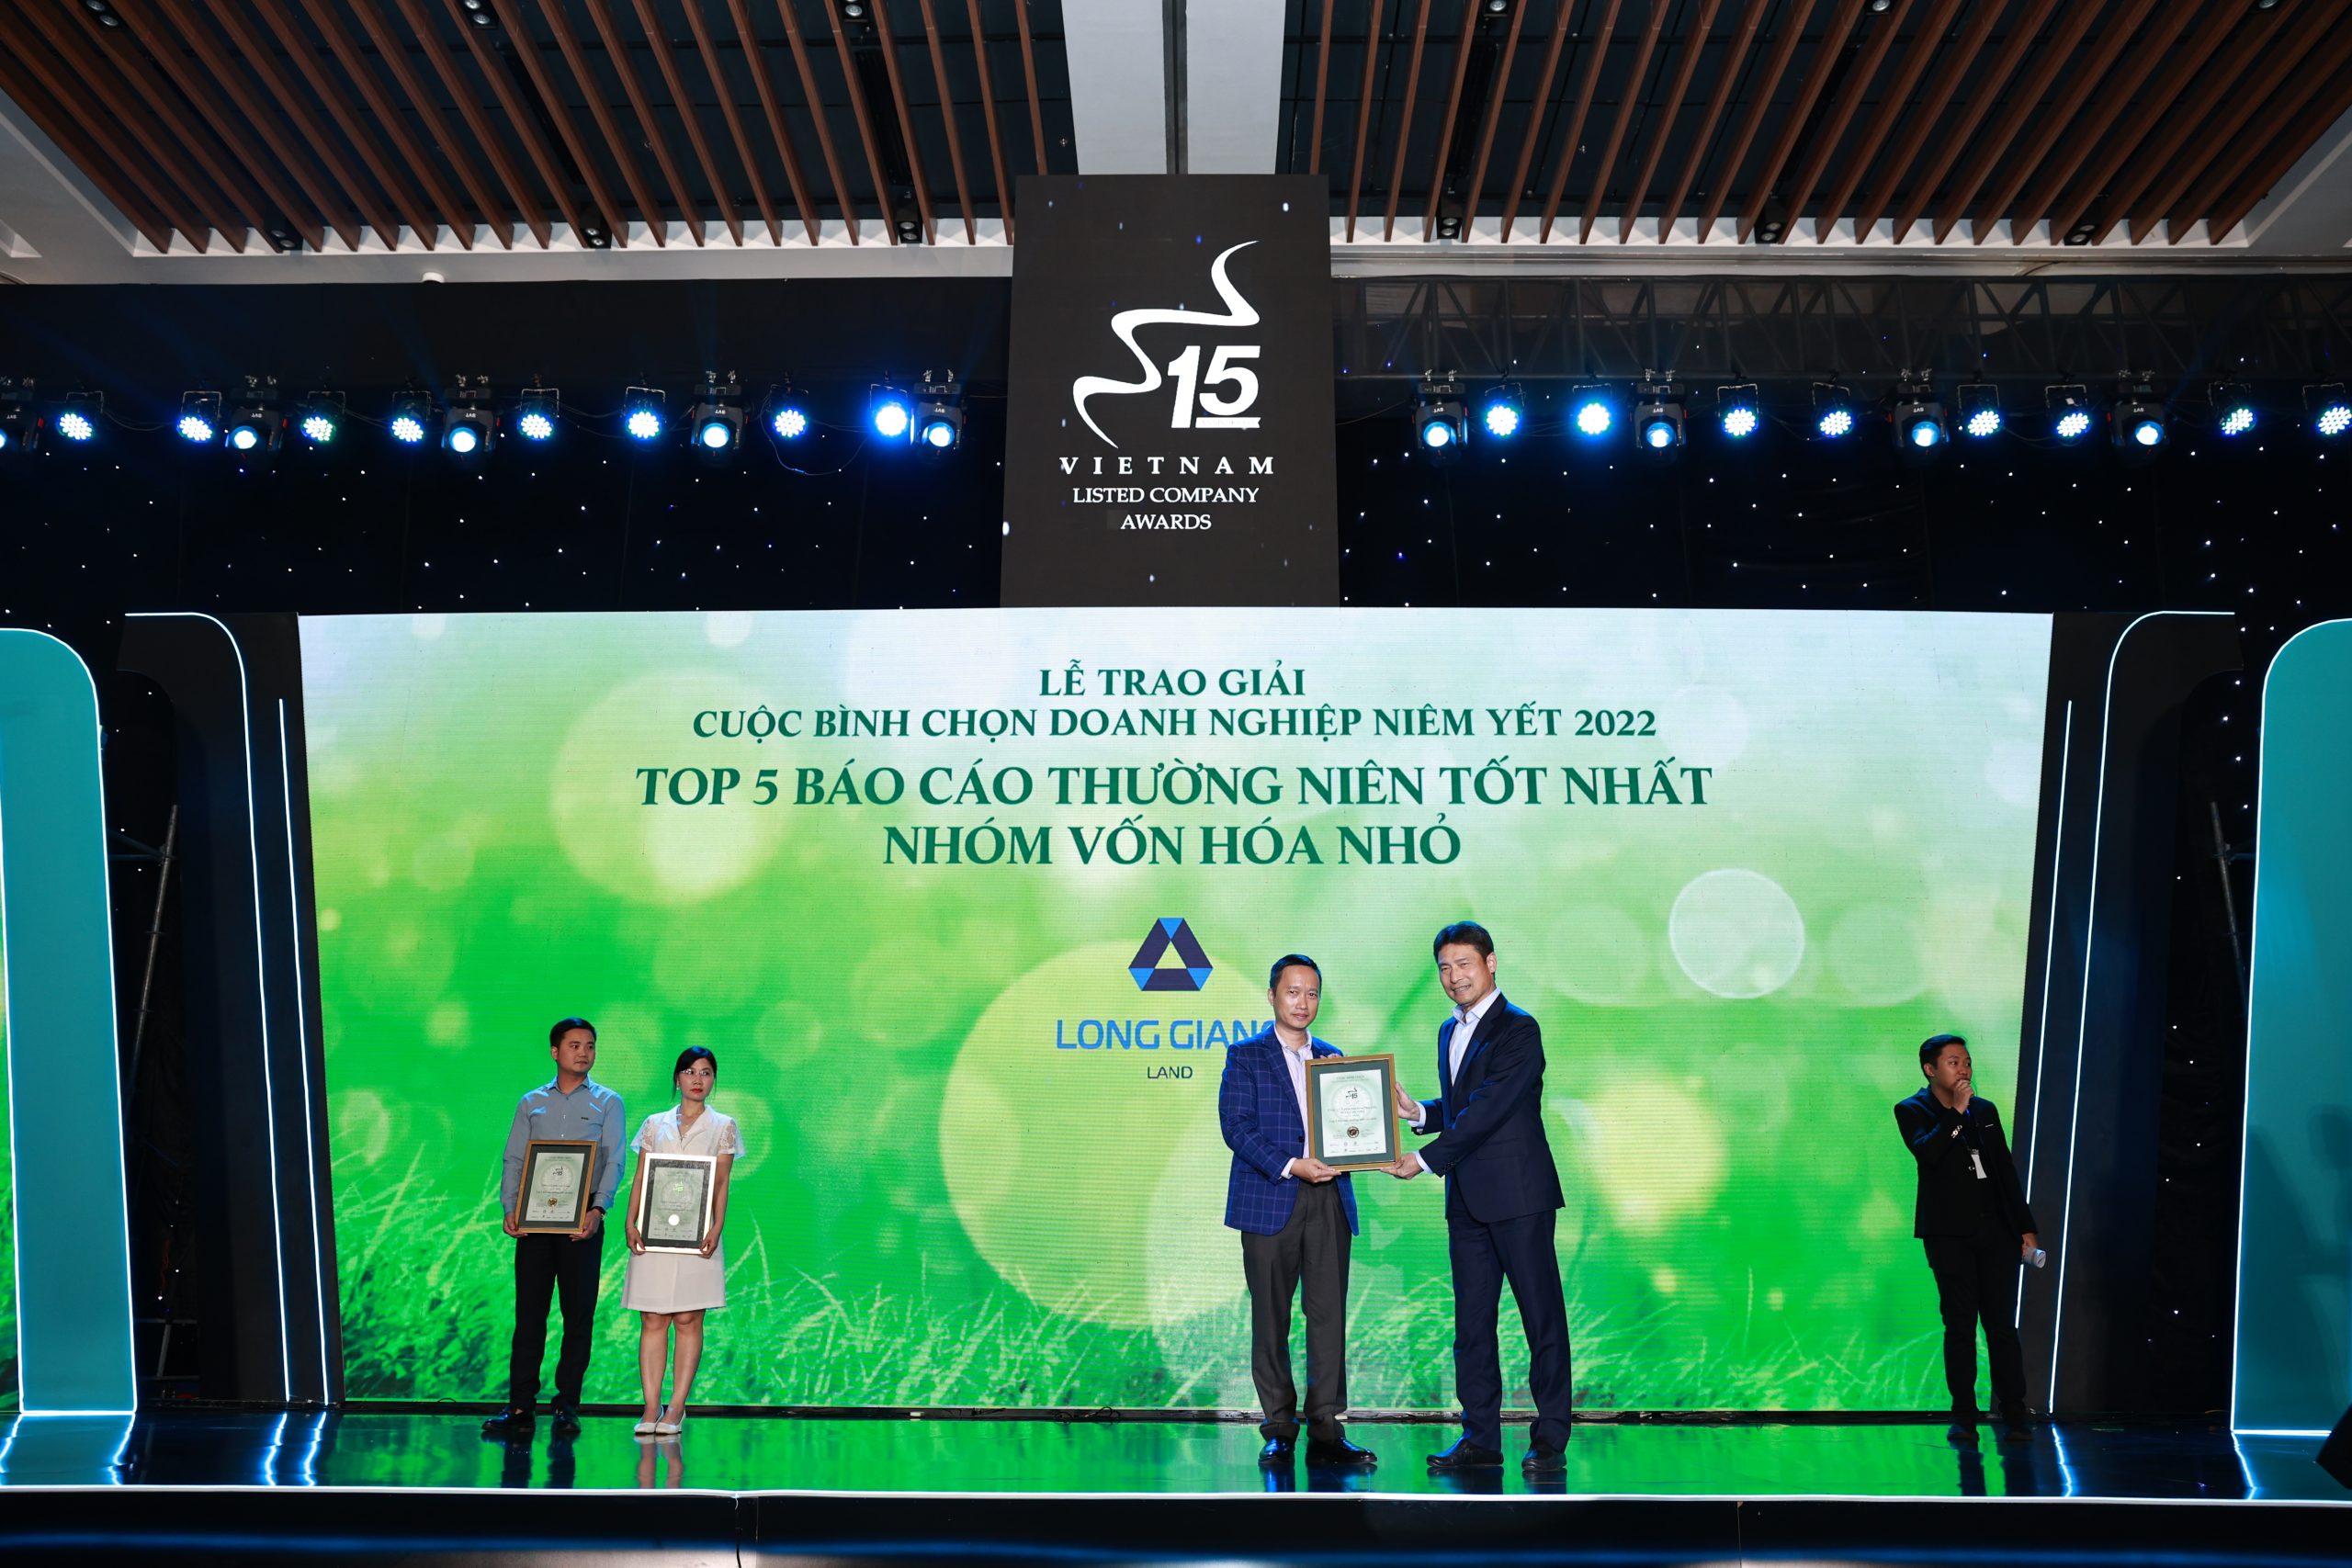 Long Giang Land được vinh danh hạng mục Top 5 Báo cáo thường niên tốt nhất năm 2022